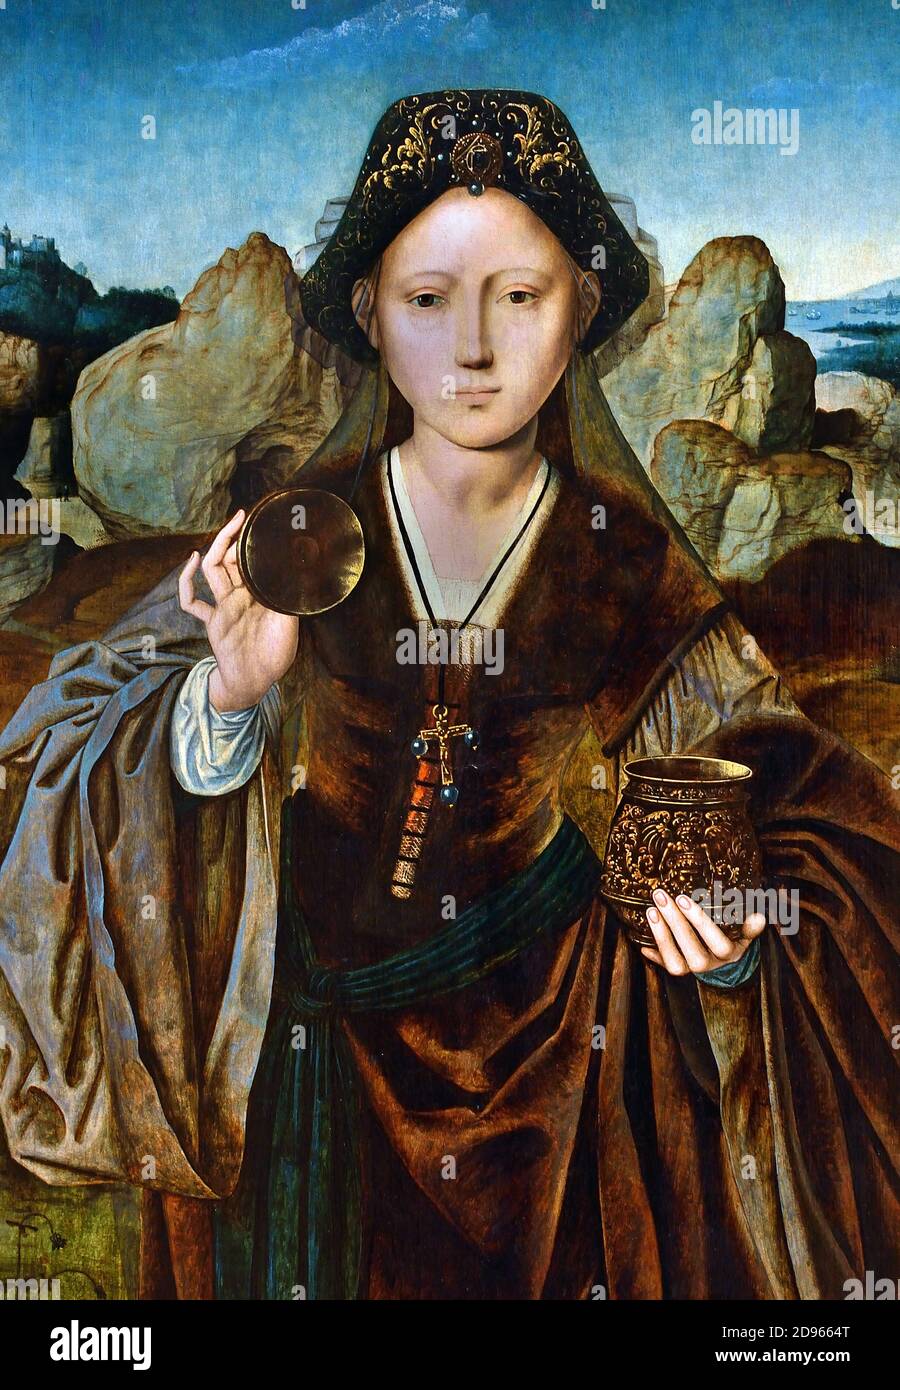 Heilige Maria Magdalena 1525 vom Meister der Maria Magdalena Antwerpen, Belgien, Flämisch, ( Maria Magdalena, reiste mit Jesus als einer seiner Anhänger und war ein Zeuge seiner Kreuzigung und ihre Folgen. ) Stockfoto